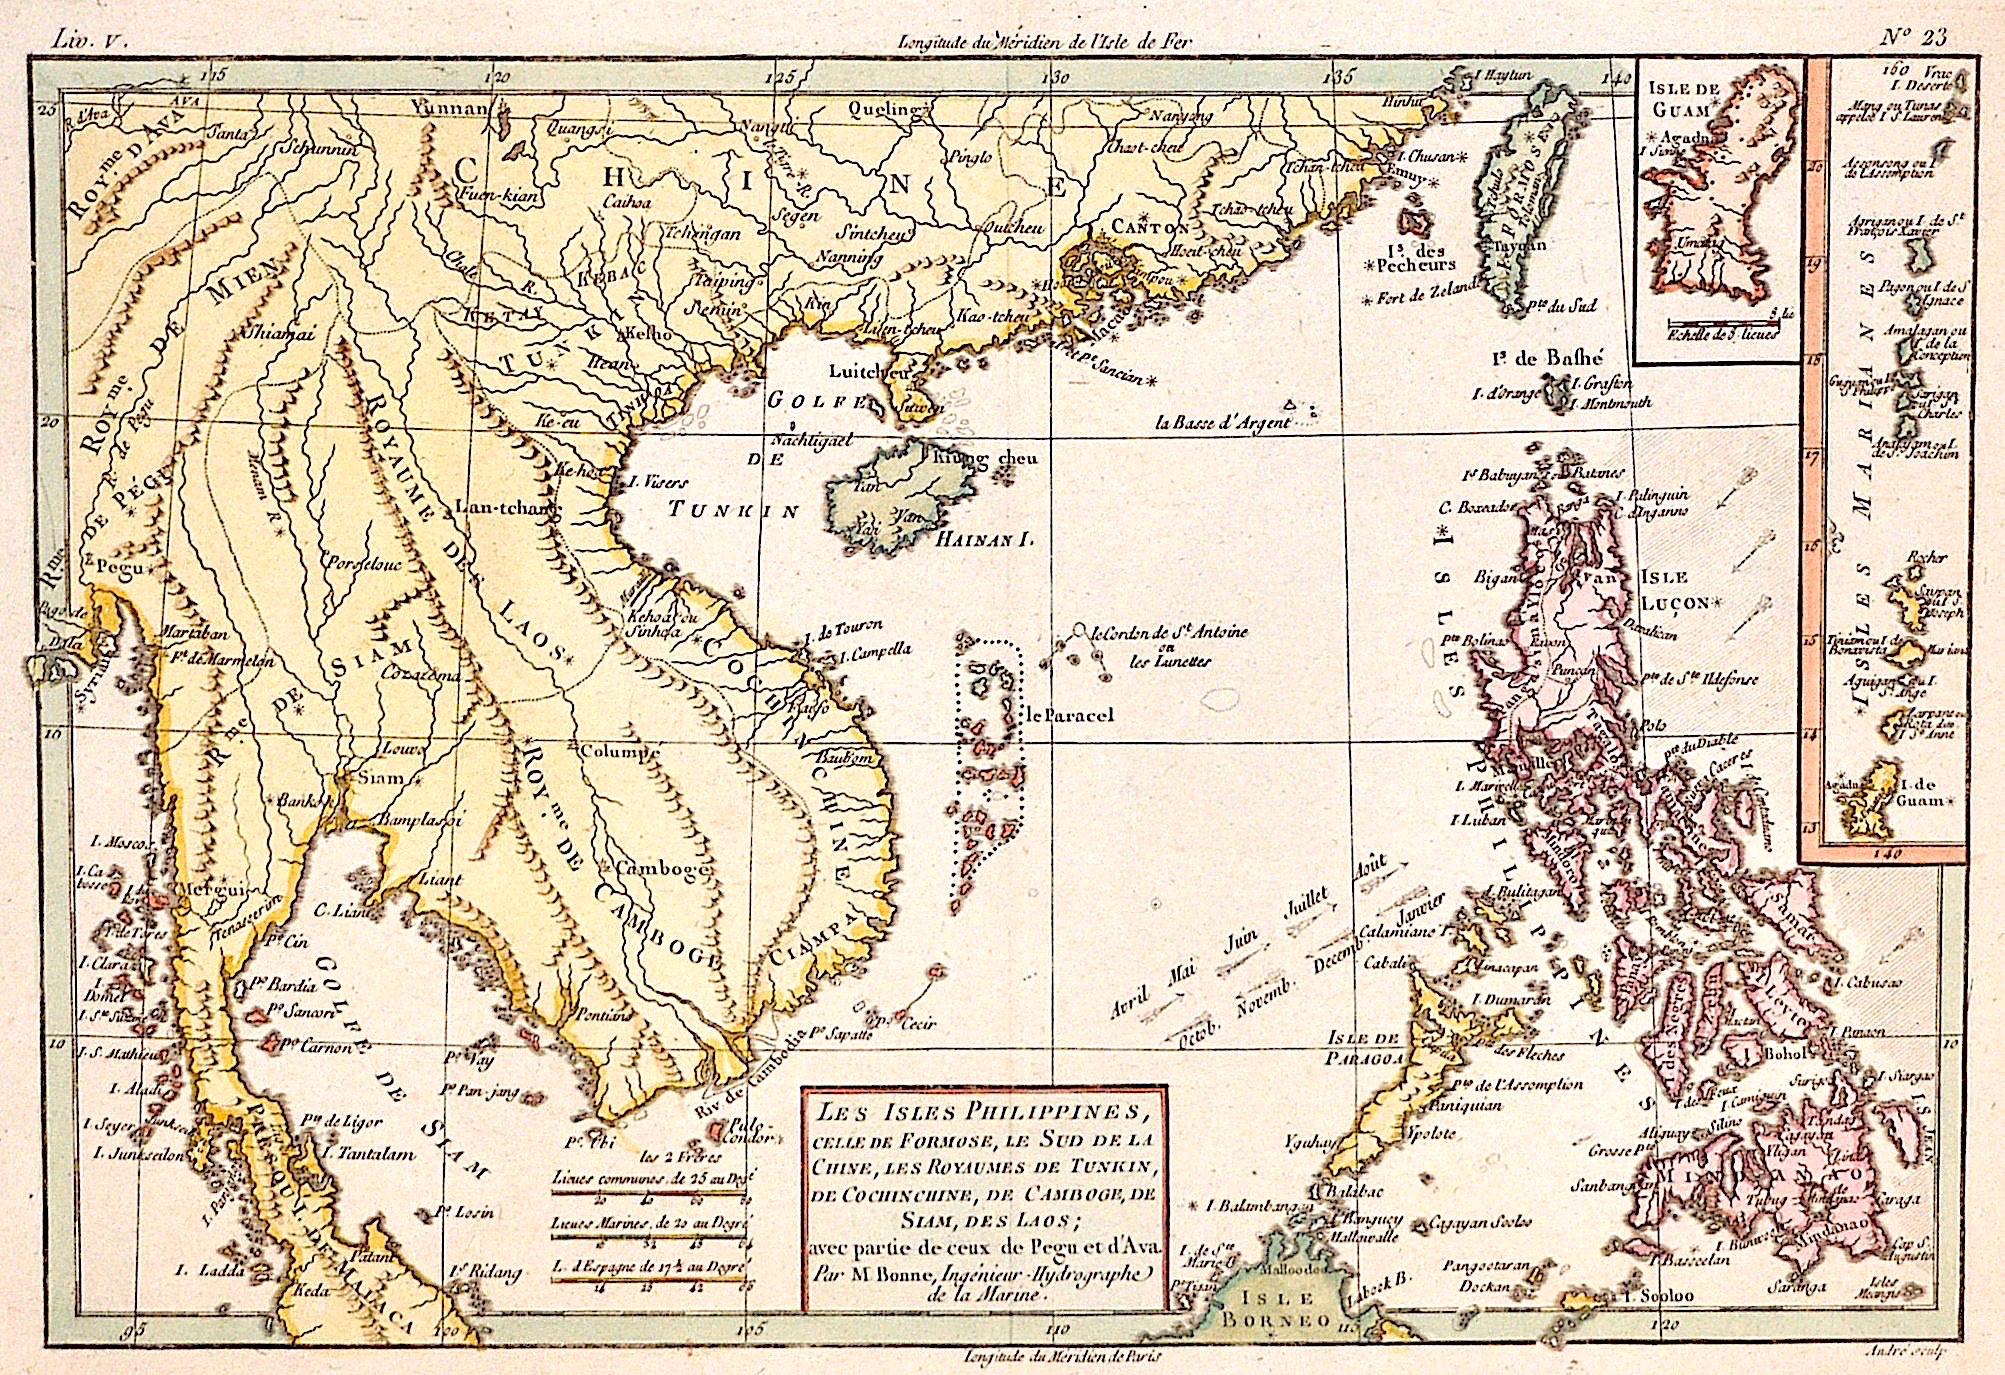 Bonne Rigobert Les Isles Philippines, celle de Formose, le Sud de la Chine, les Royaumes de Tunkin, de Cochin Chine, de Camboge, de Siam, des Laos…